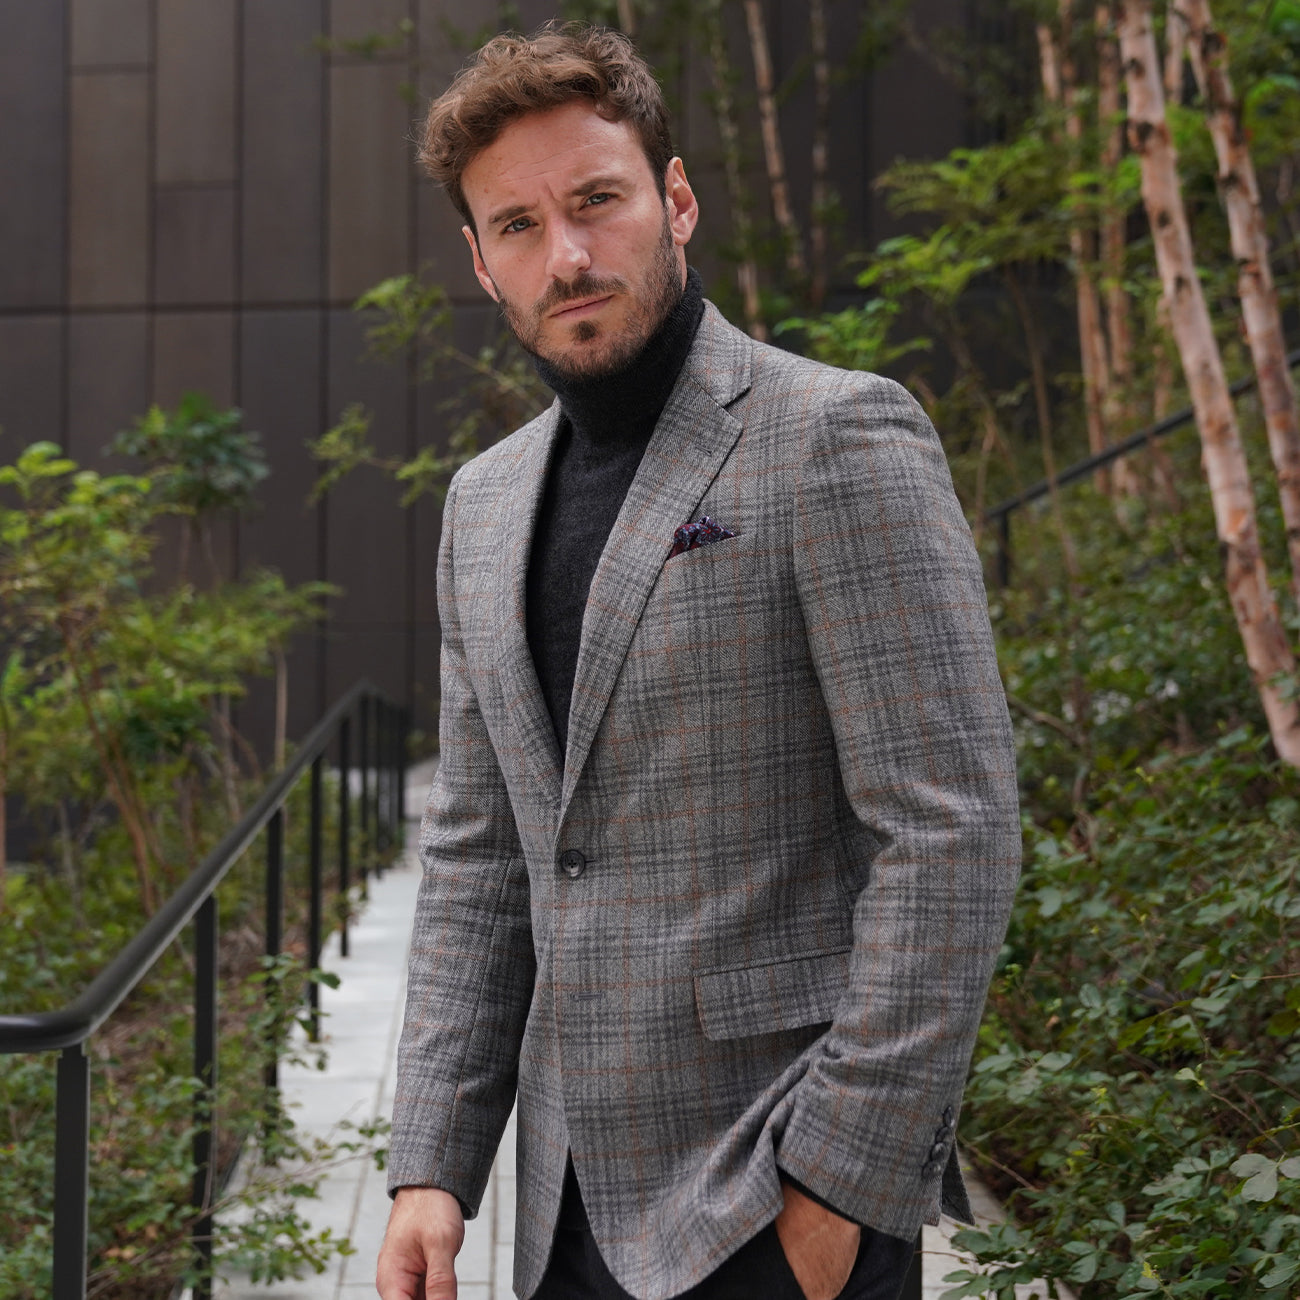 Men's Fashion | Suits, Dress Shirts, Ties & More | Joseph Abboud